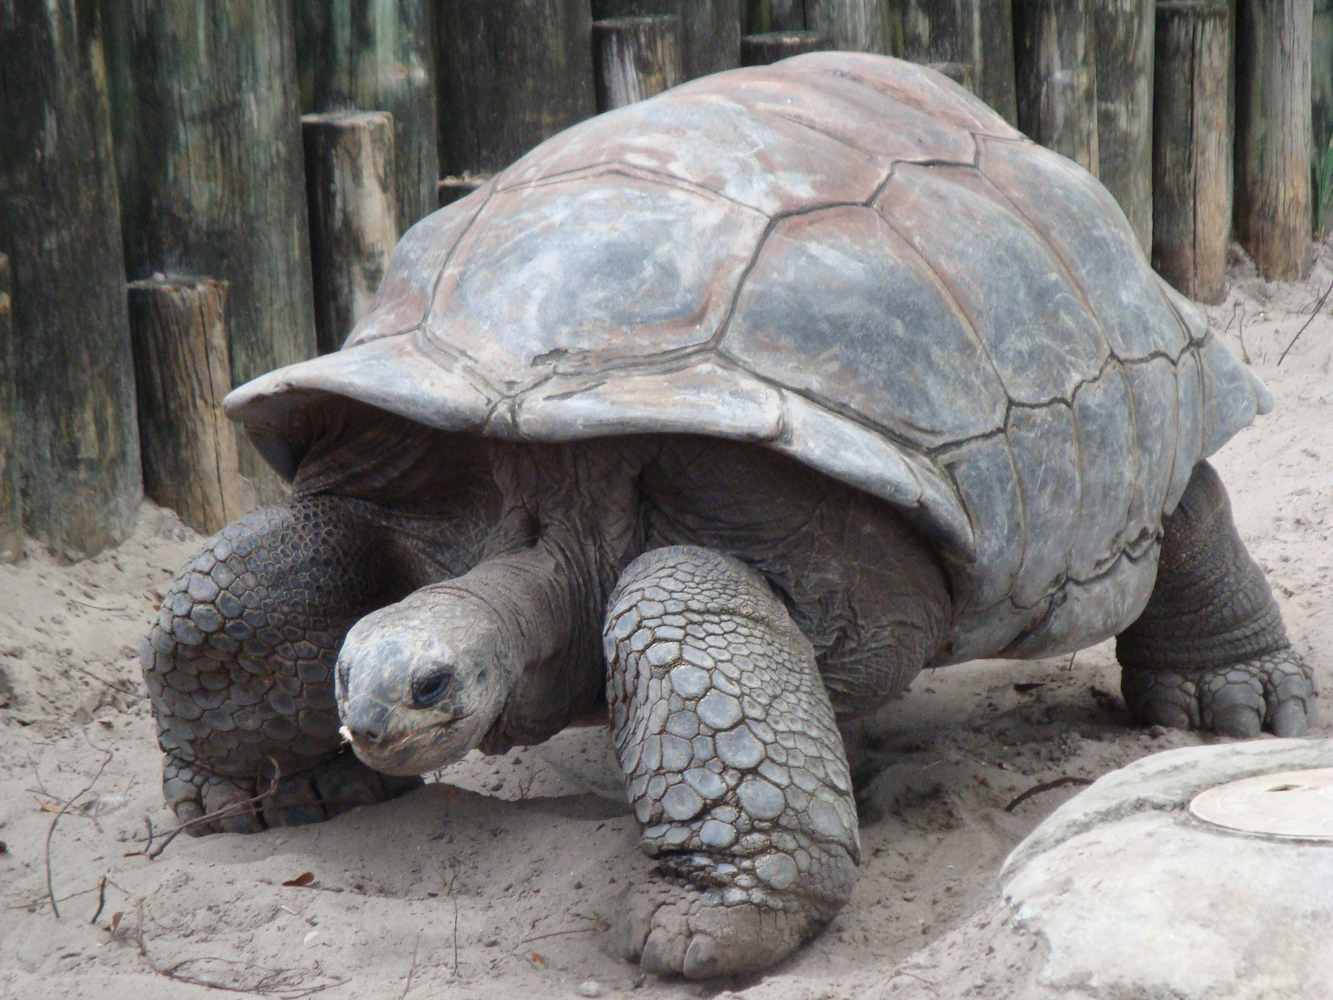 A Galápagos Giant Tortoise